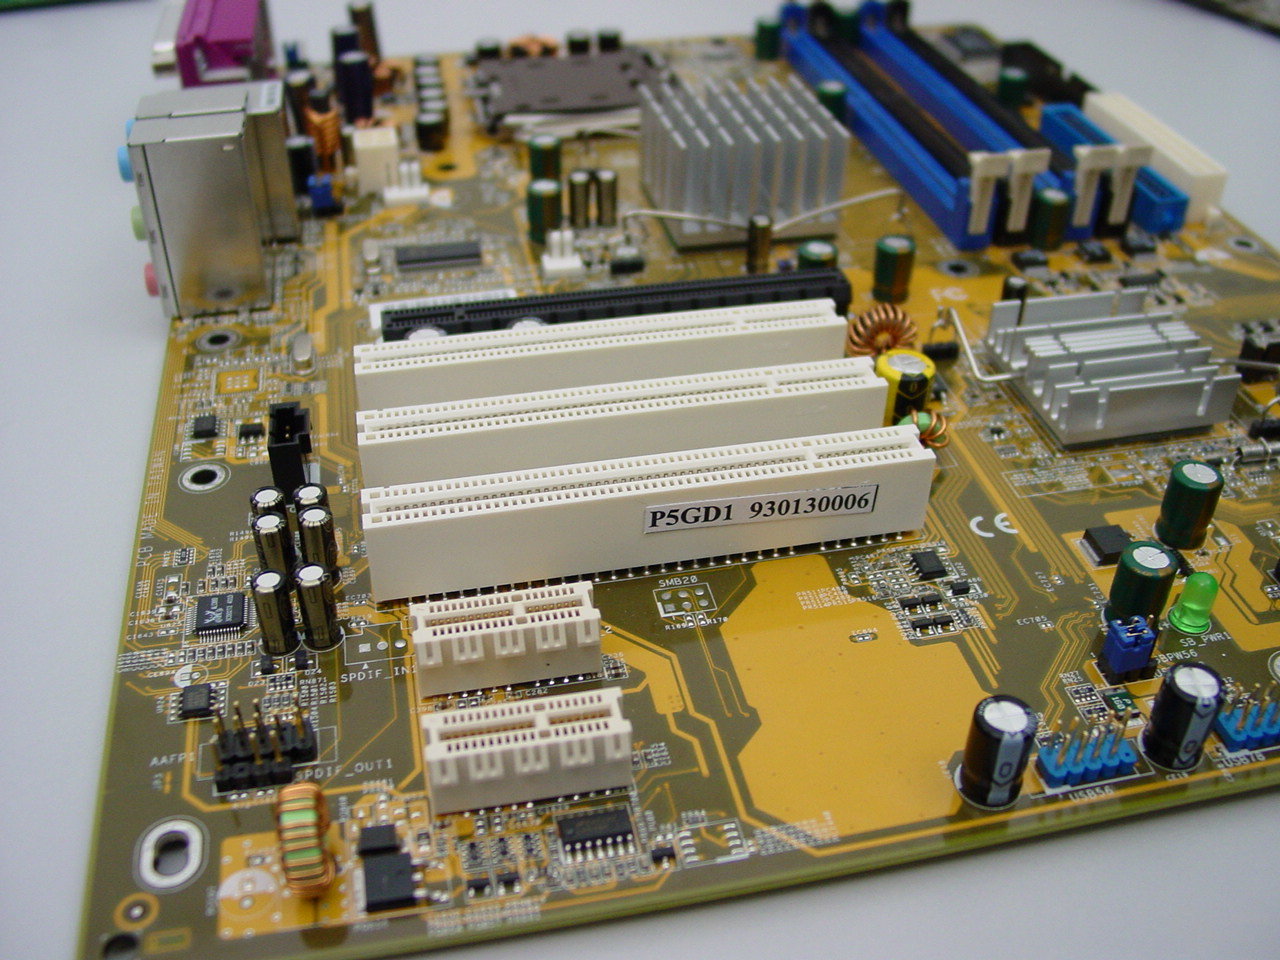 Asus P5GD1 mit zwei PCI Express x1 Steckplätzen